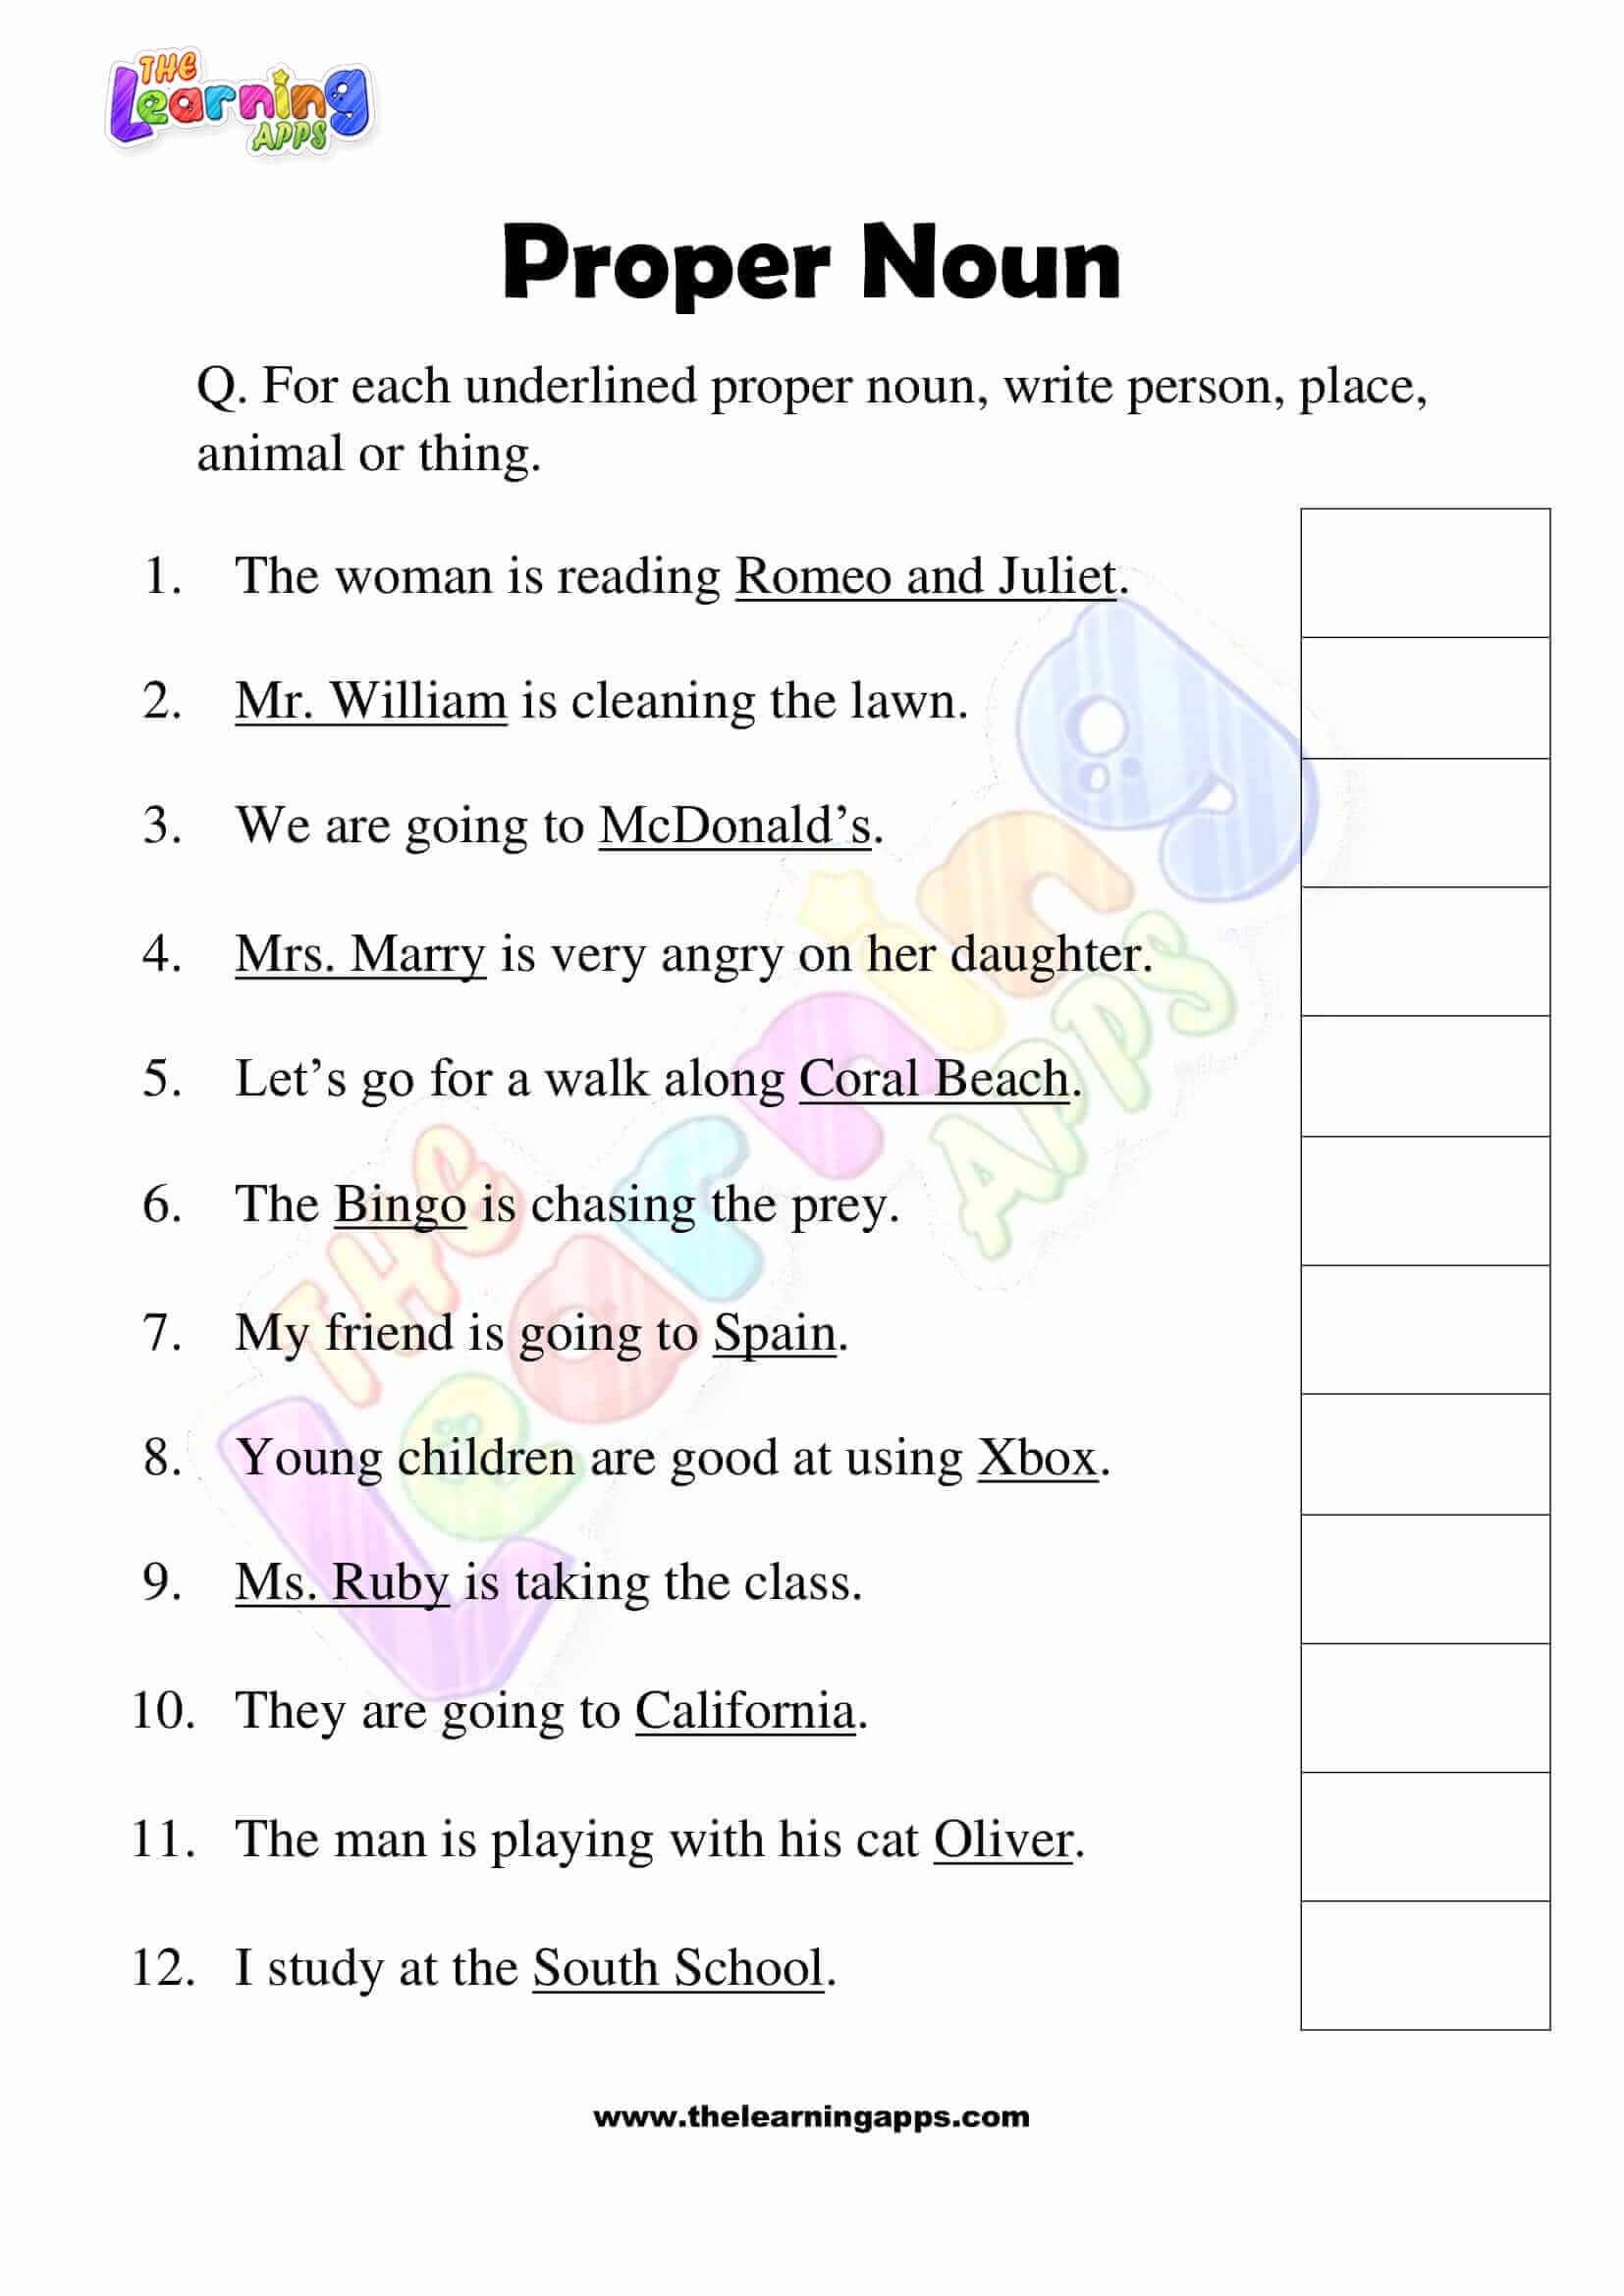 Proper-Noun-Worksheets-Grade-3-Activity-3